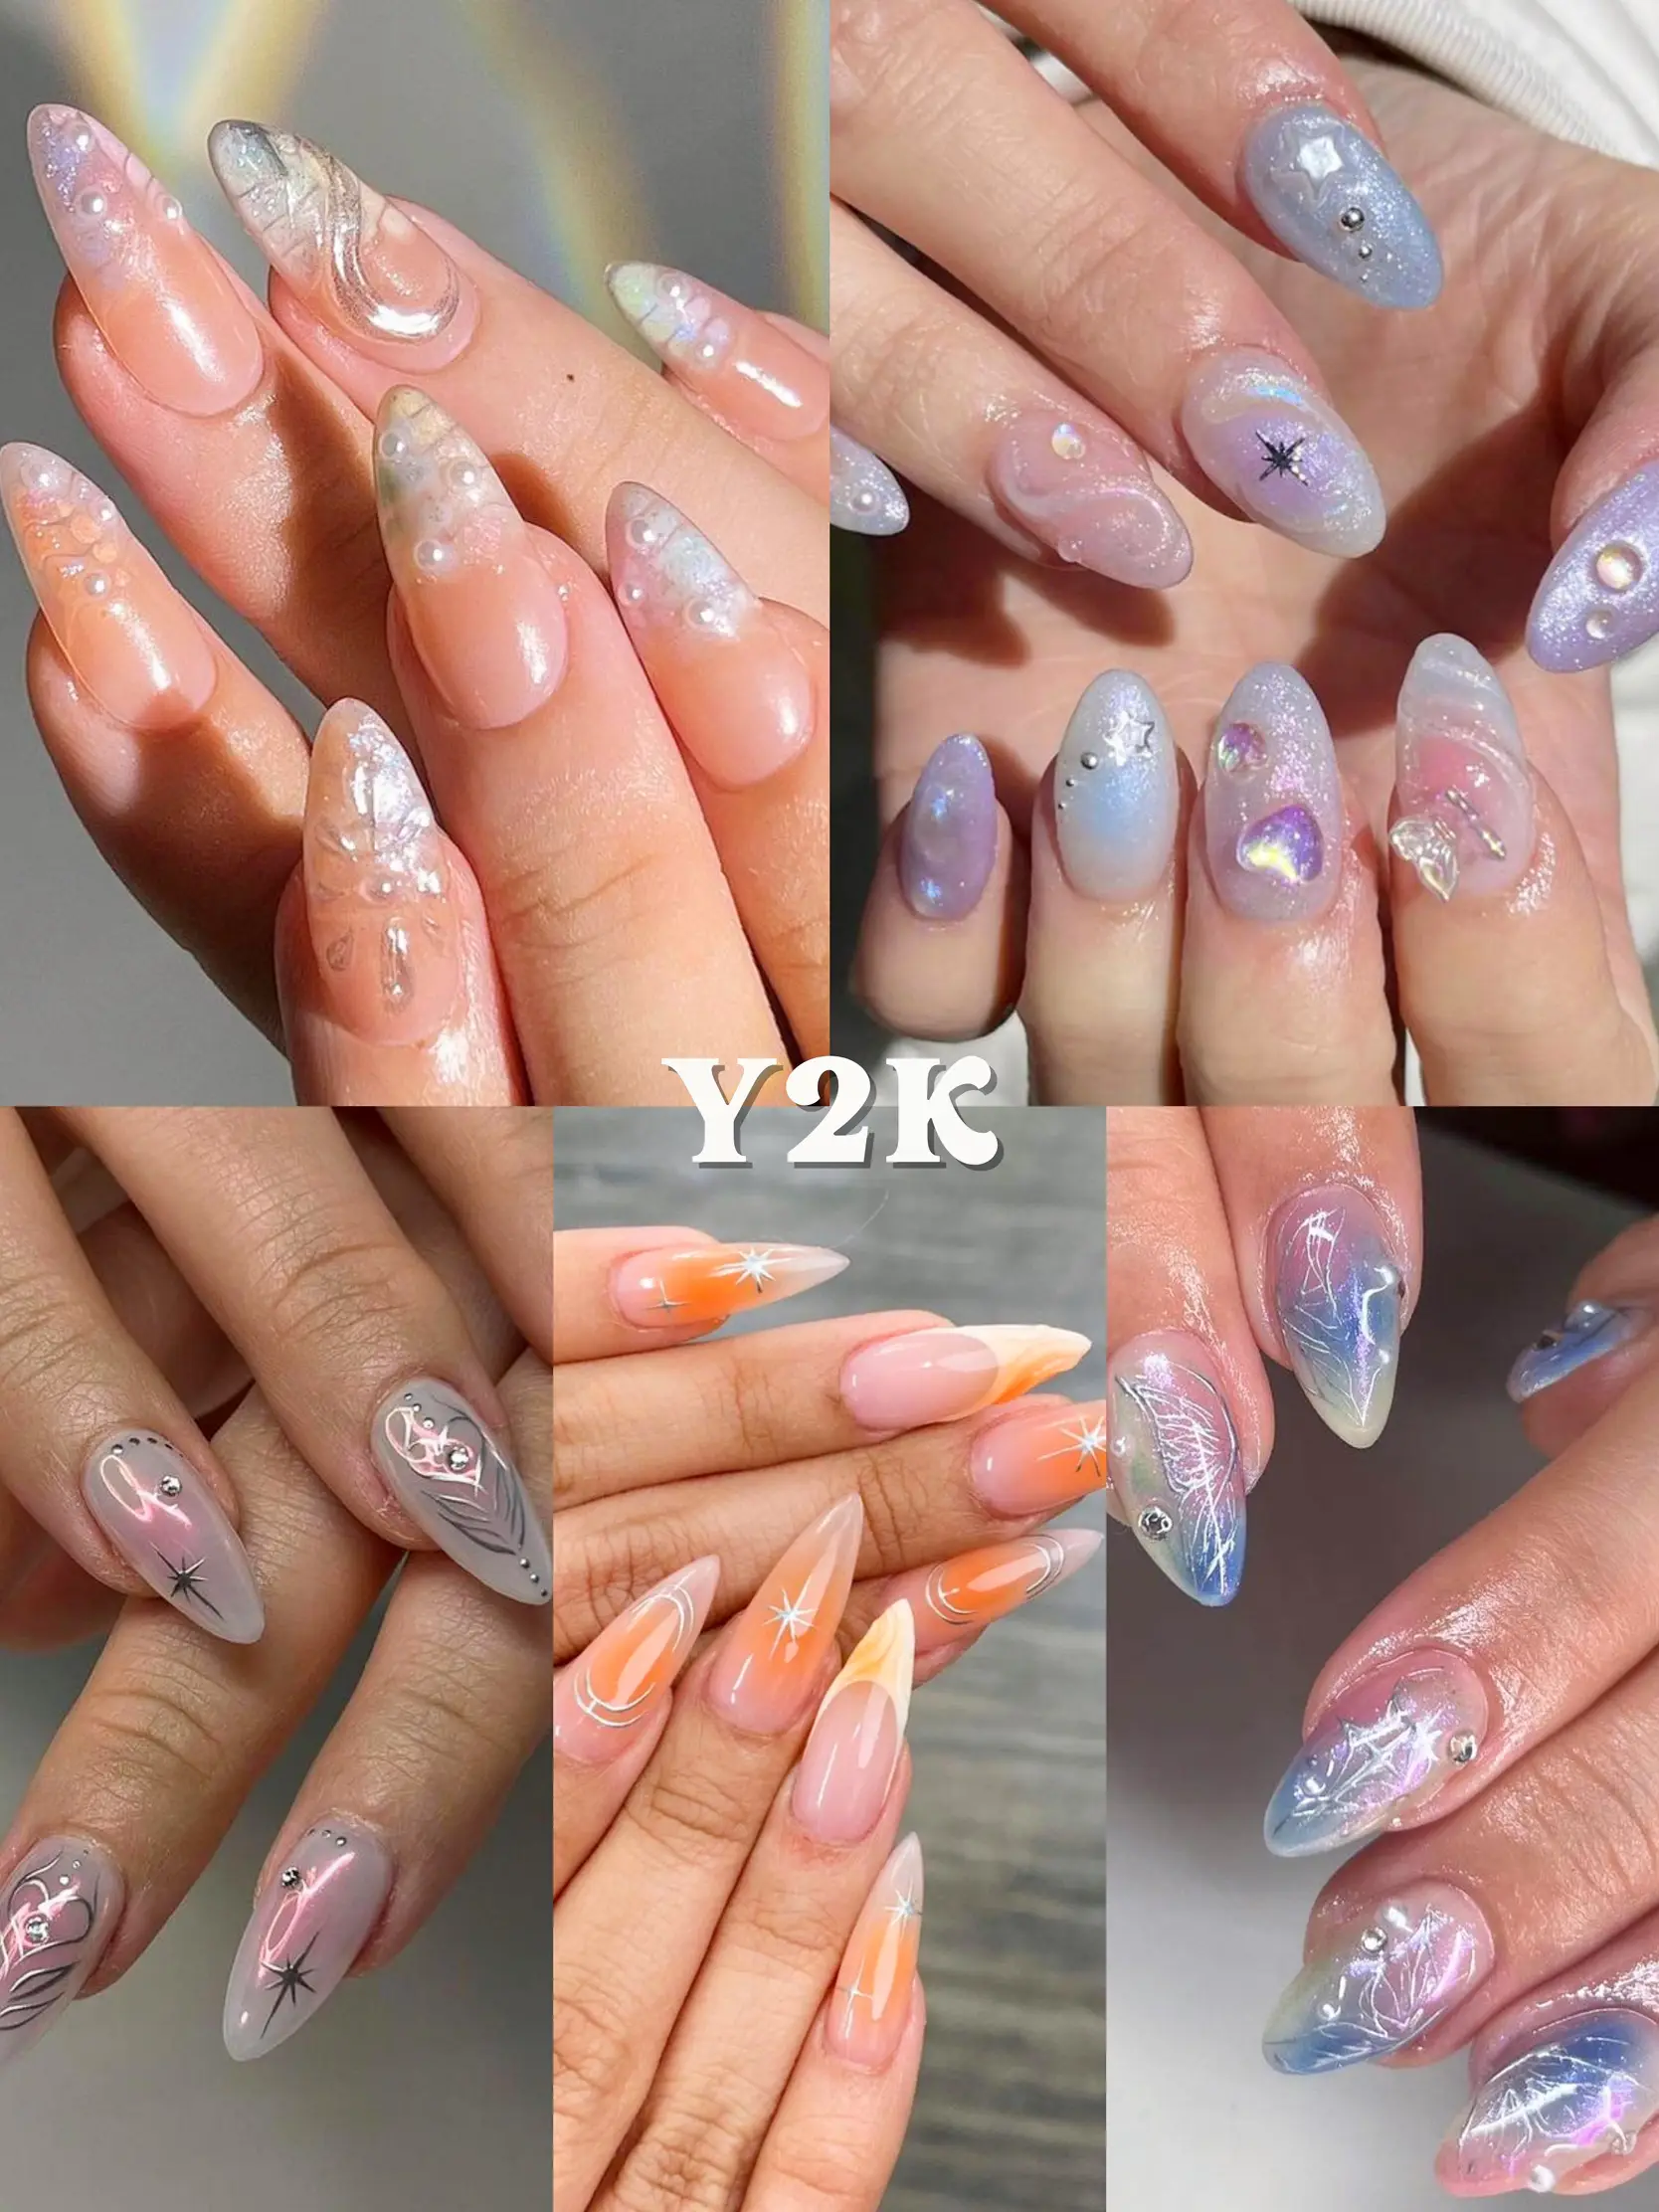 Pink aura nails, airbrush nails, press on nails, trendy nails, luxury  nails, square nails, black nails, ignails